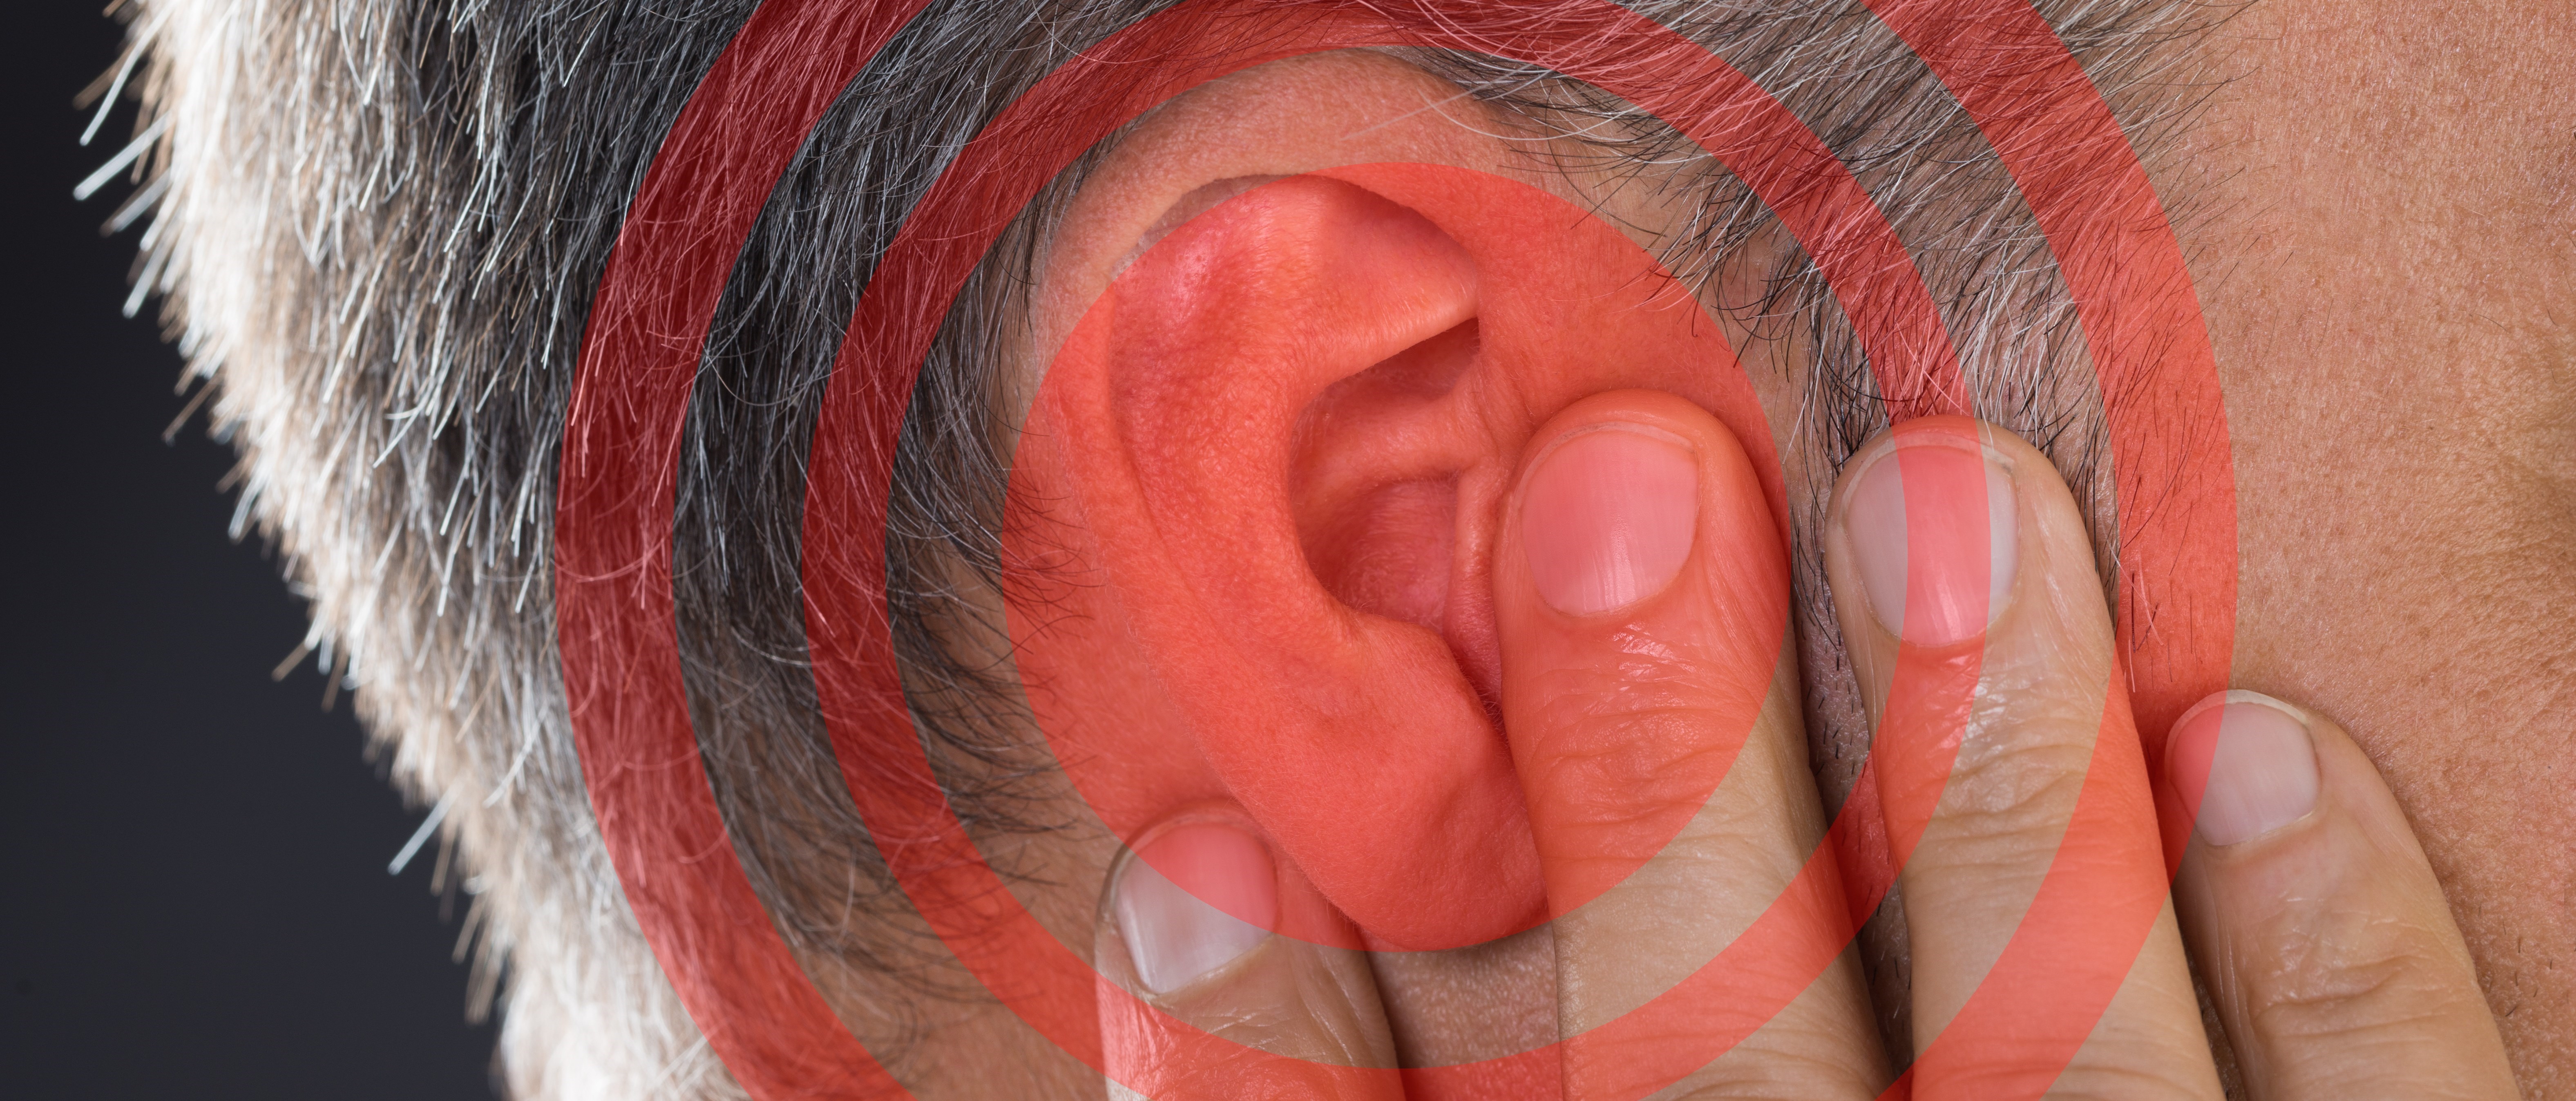 Närbild på en person som håller för sitt öra. Runt örat visas en röd symbol som indikerar oljud.